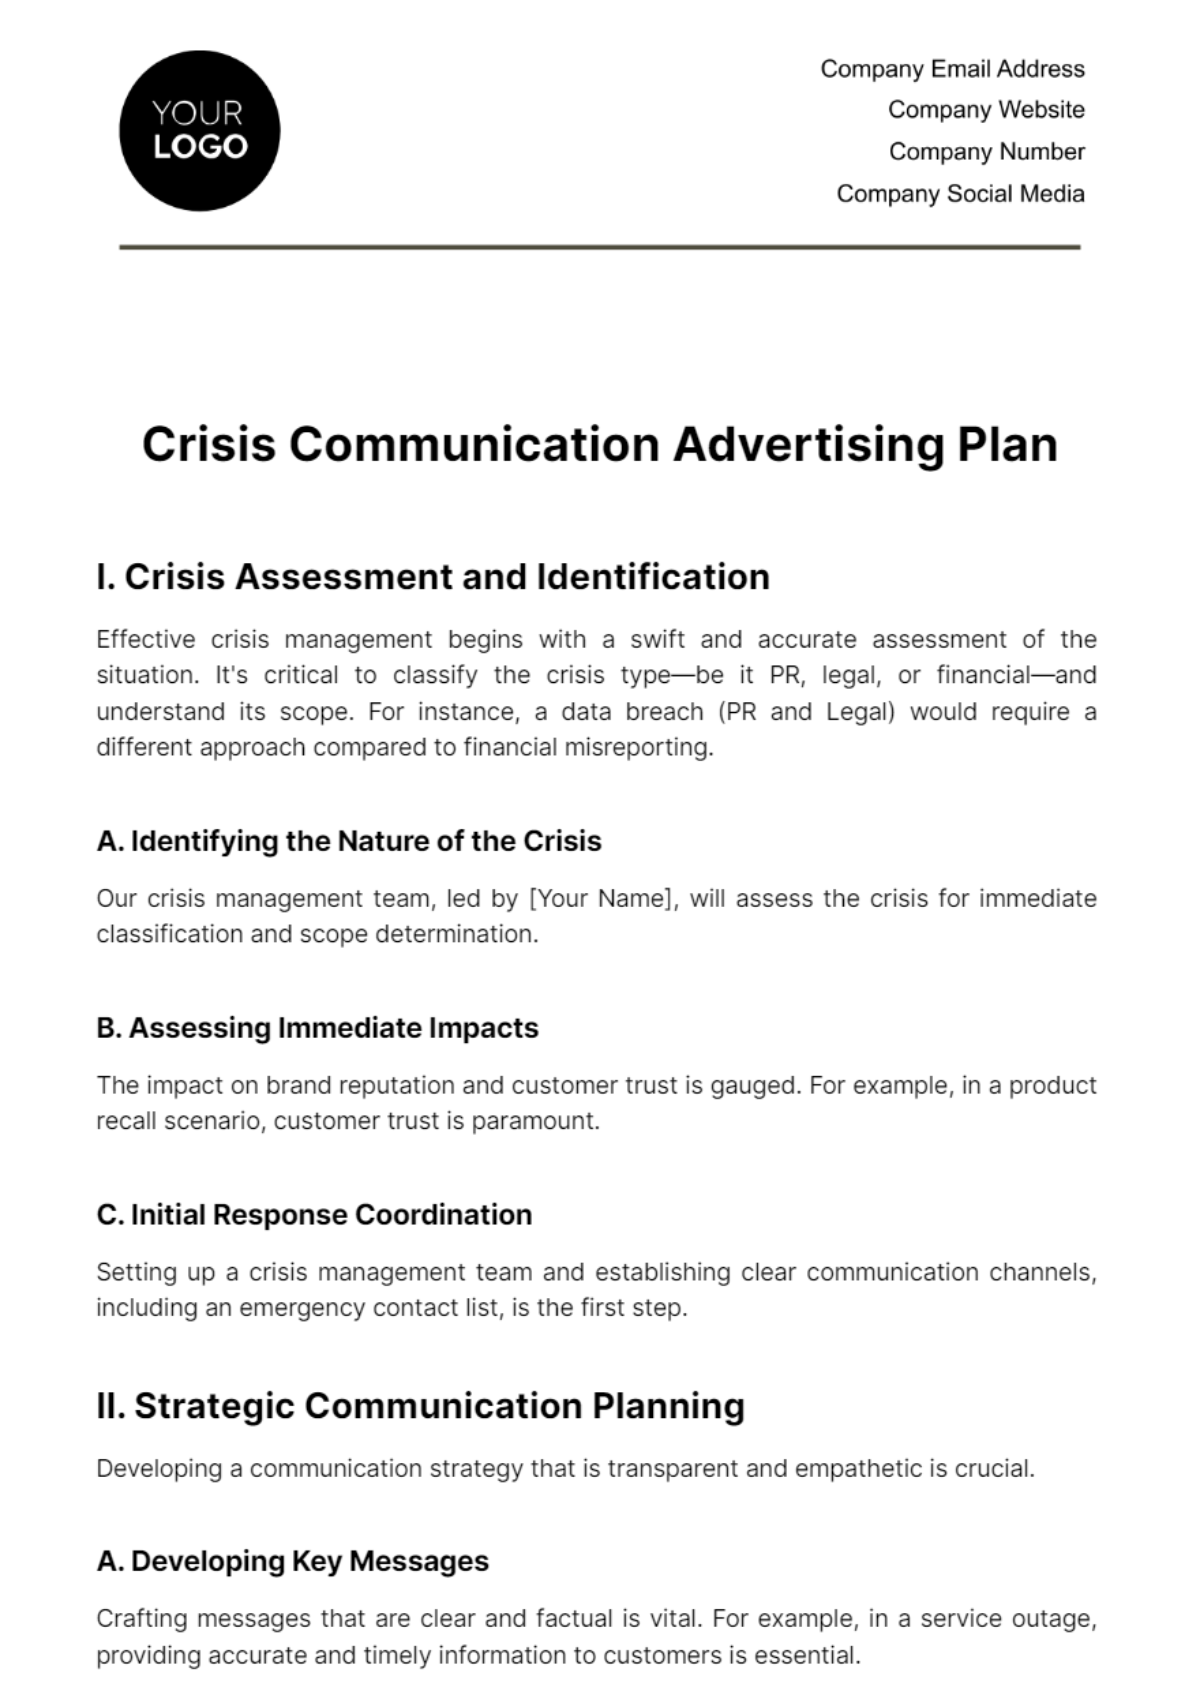 Crisis Communication Advertising Plan Template